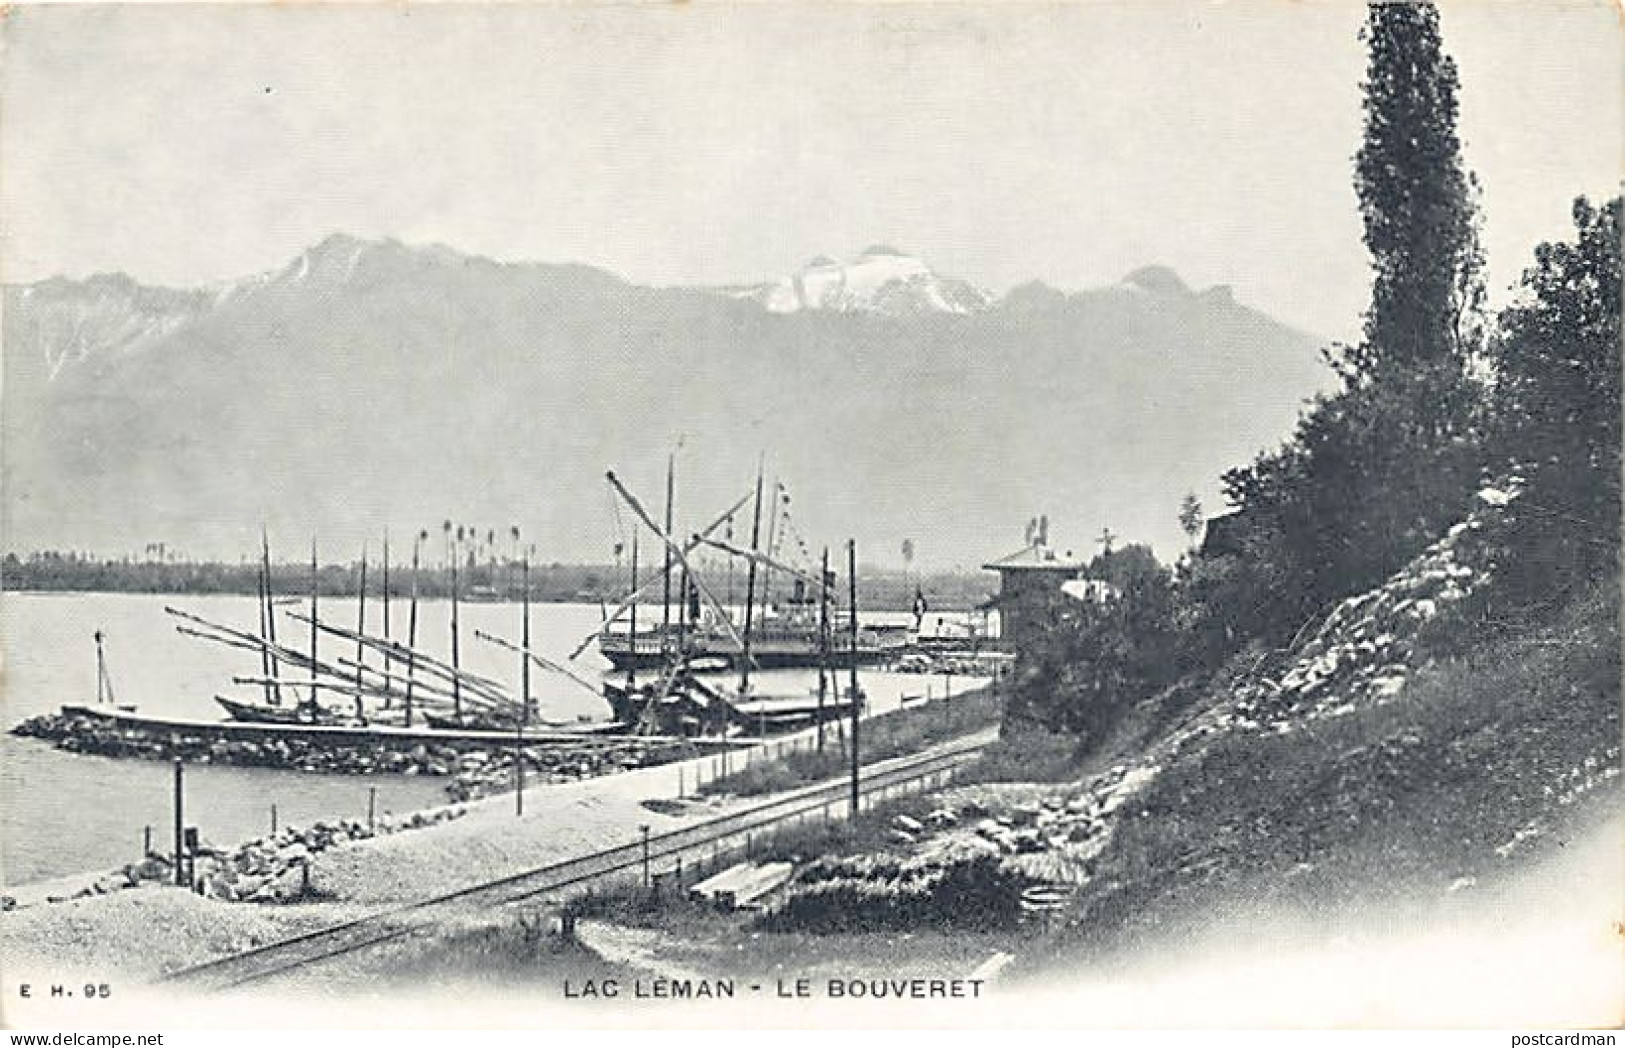 Suisse - Lac Léman (VS) Le Bouveret - Ed. E. H. 95 - Lago Lemano